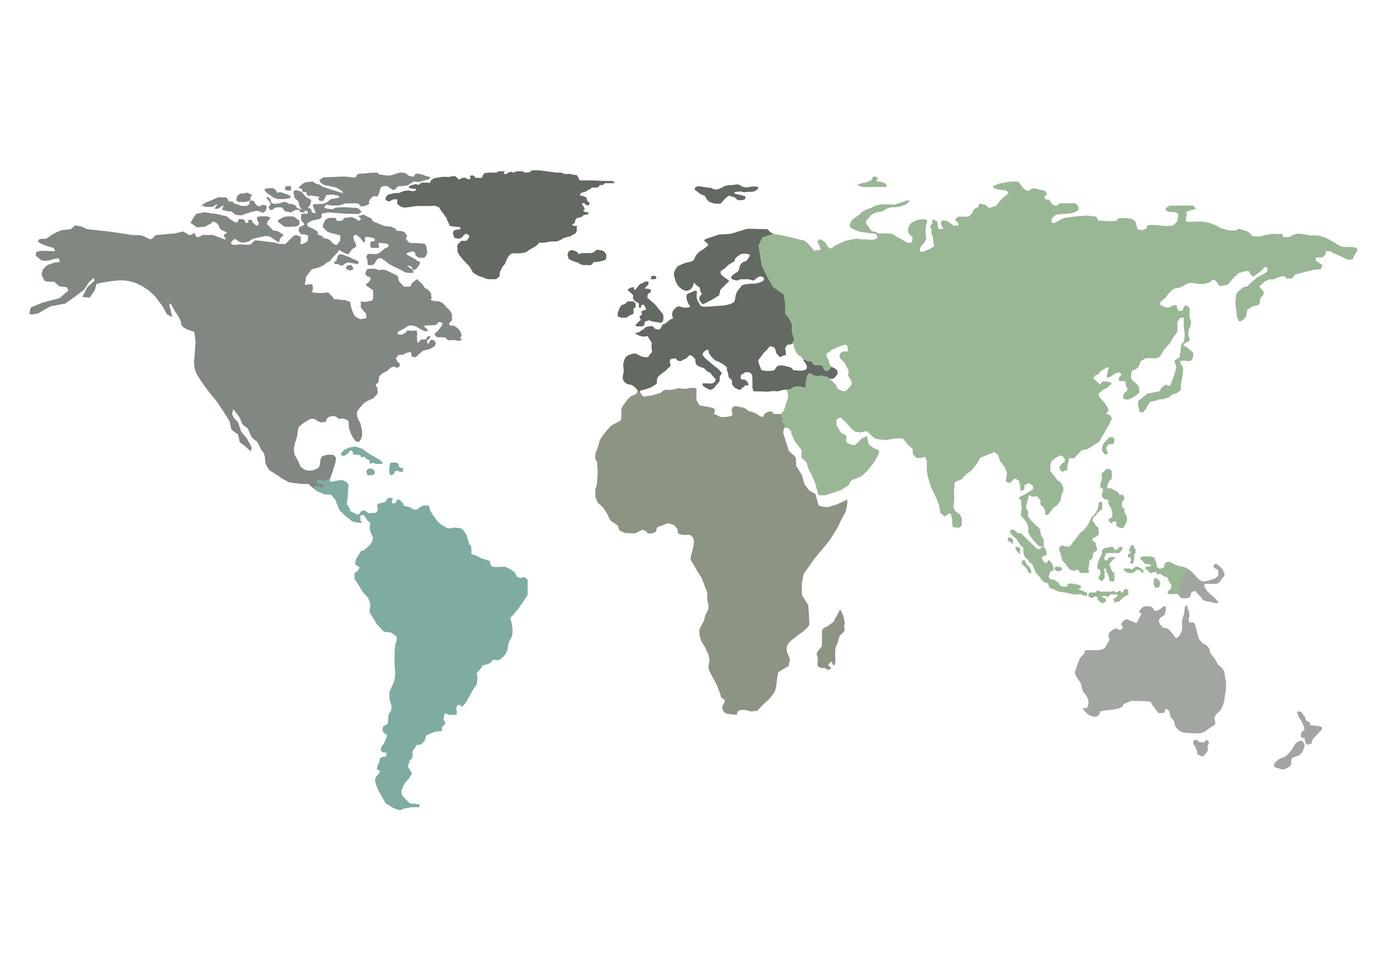 Karte der Welt in einzelne Länder foto